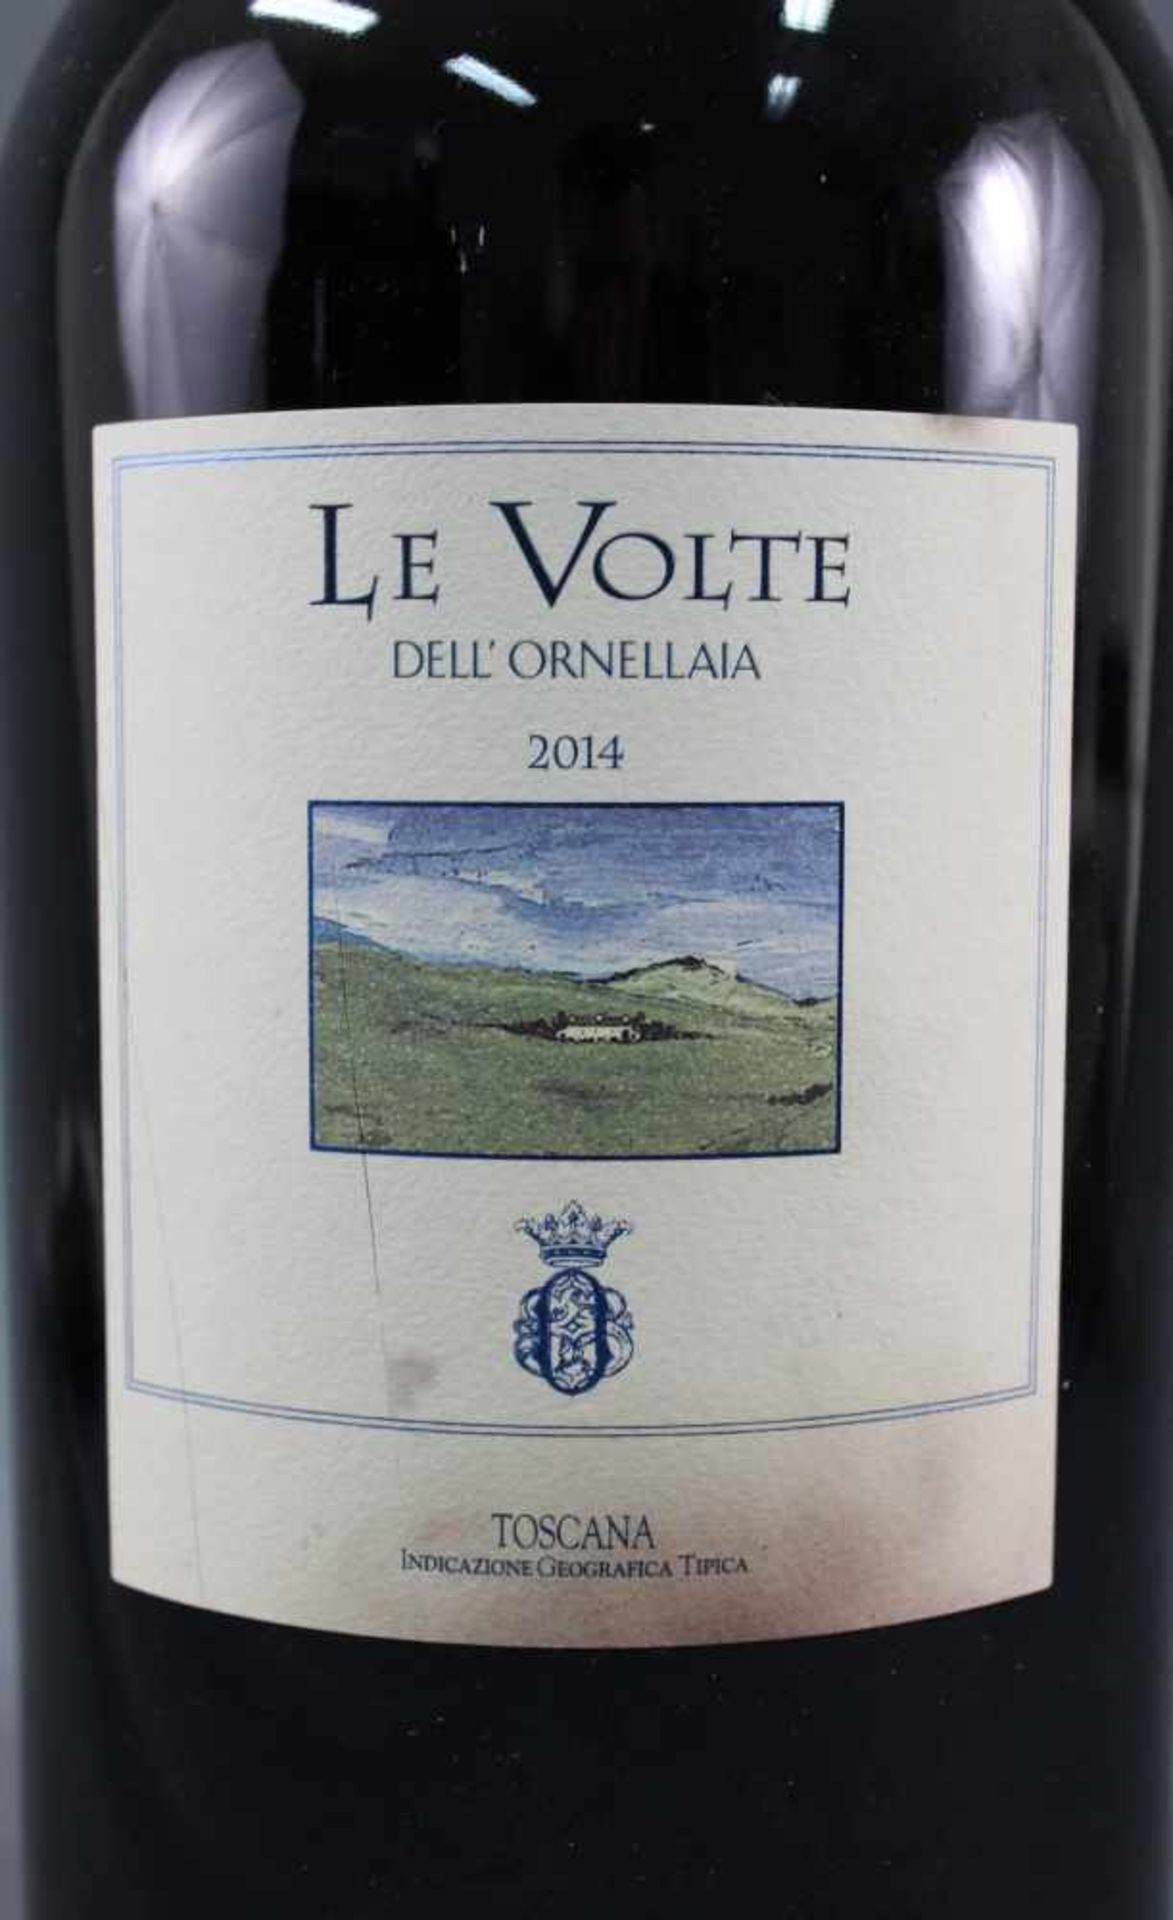 2014 Le Volte Dell' Ornellaia. Toscana IGT. Doppelmagnum.Eine Flasche Doppelmagnum 3 Liter, 13,5% - Bild 4 aus 8